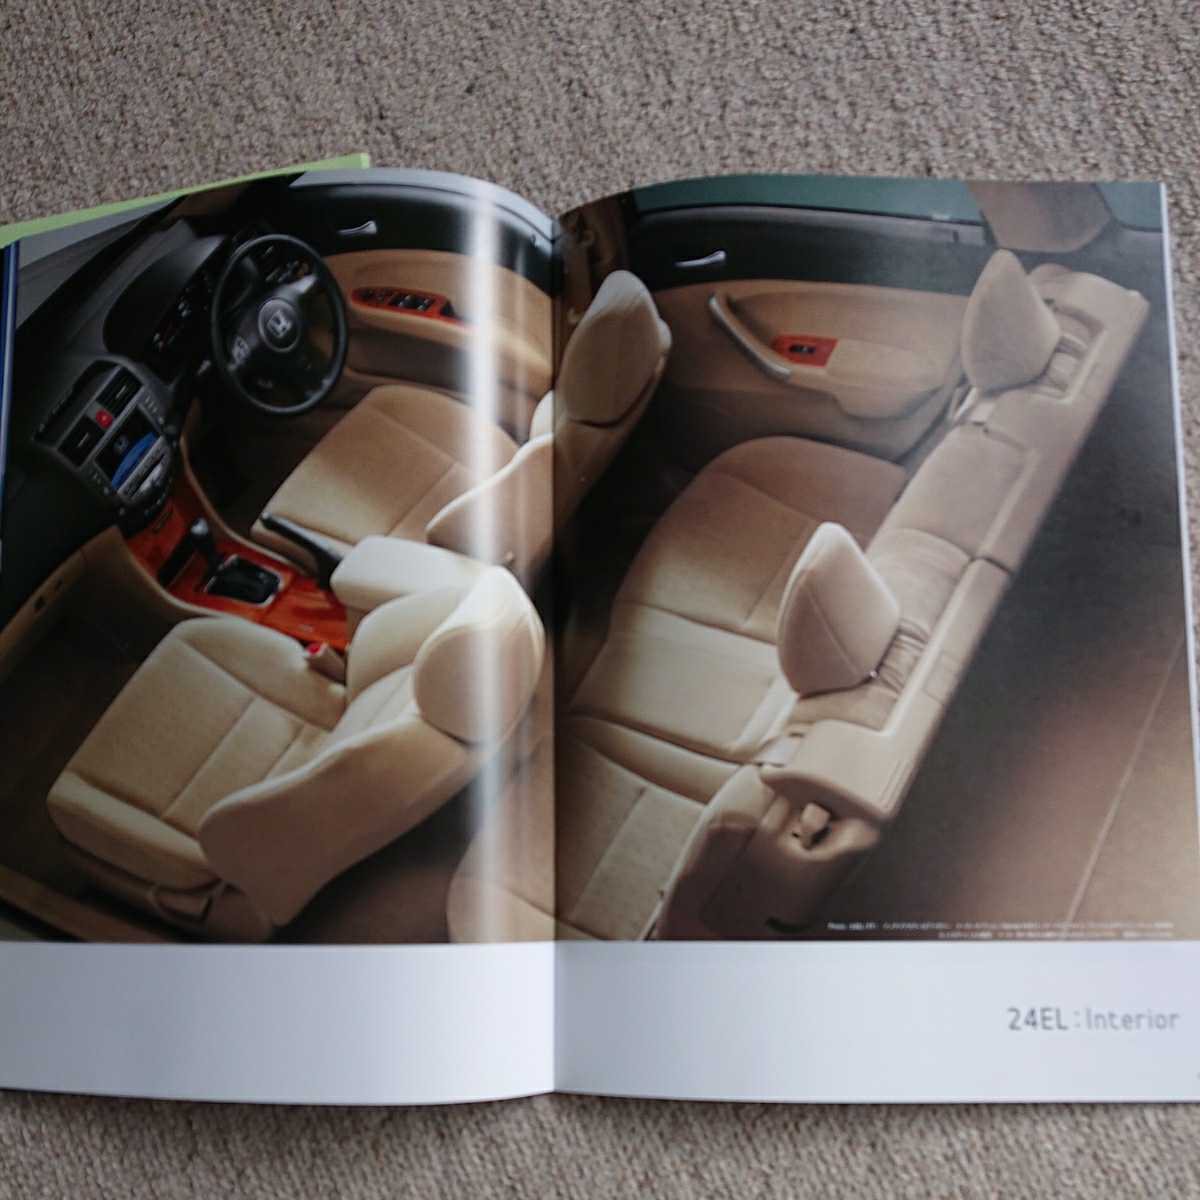  снят с производства,2006 год 10 месяц выпуск, модель ABA-CM1,CM2 CM3. Honda Accord Wagon, основной каталог, таблица цен комплект.